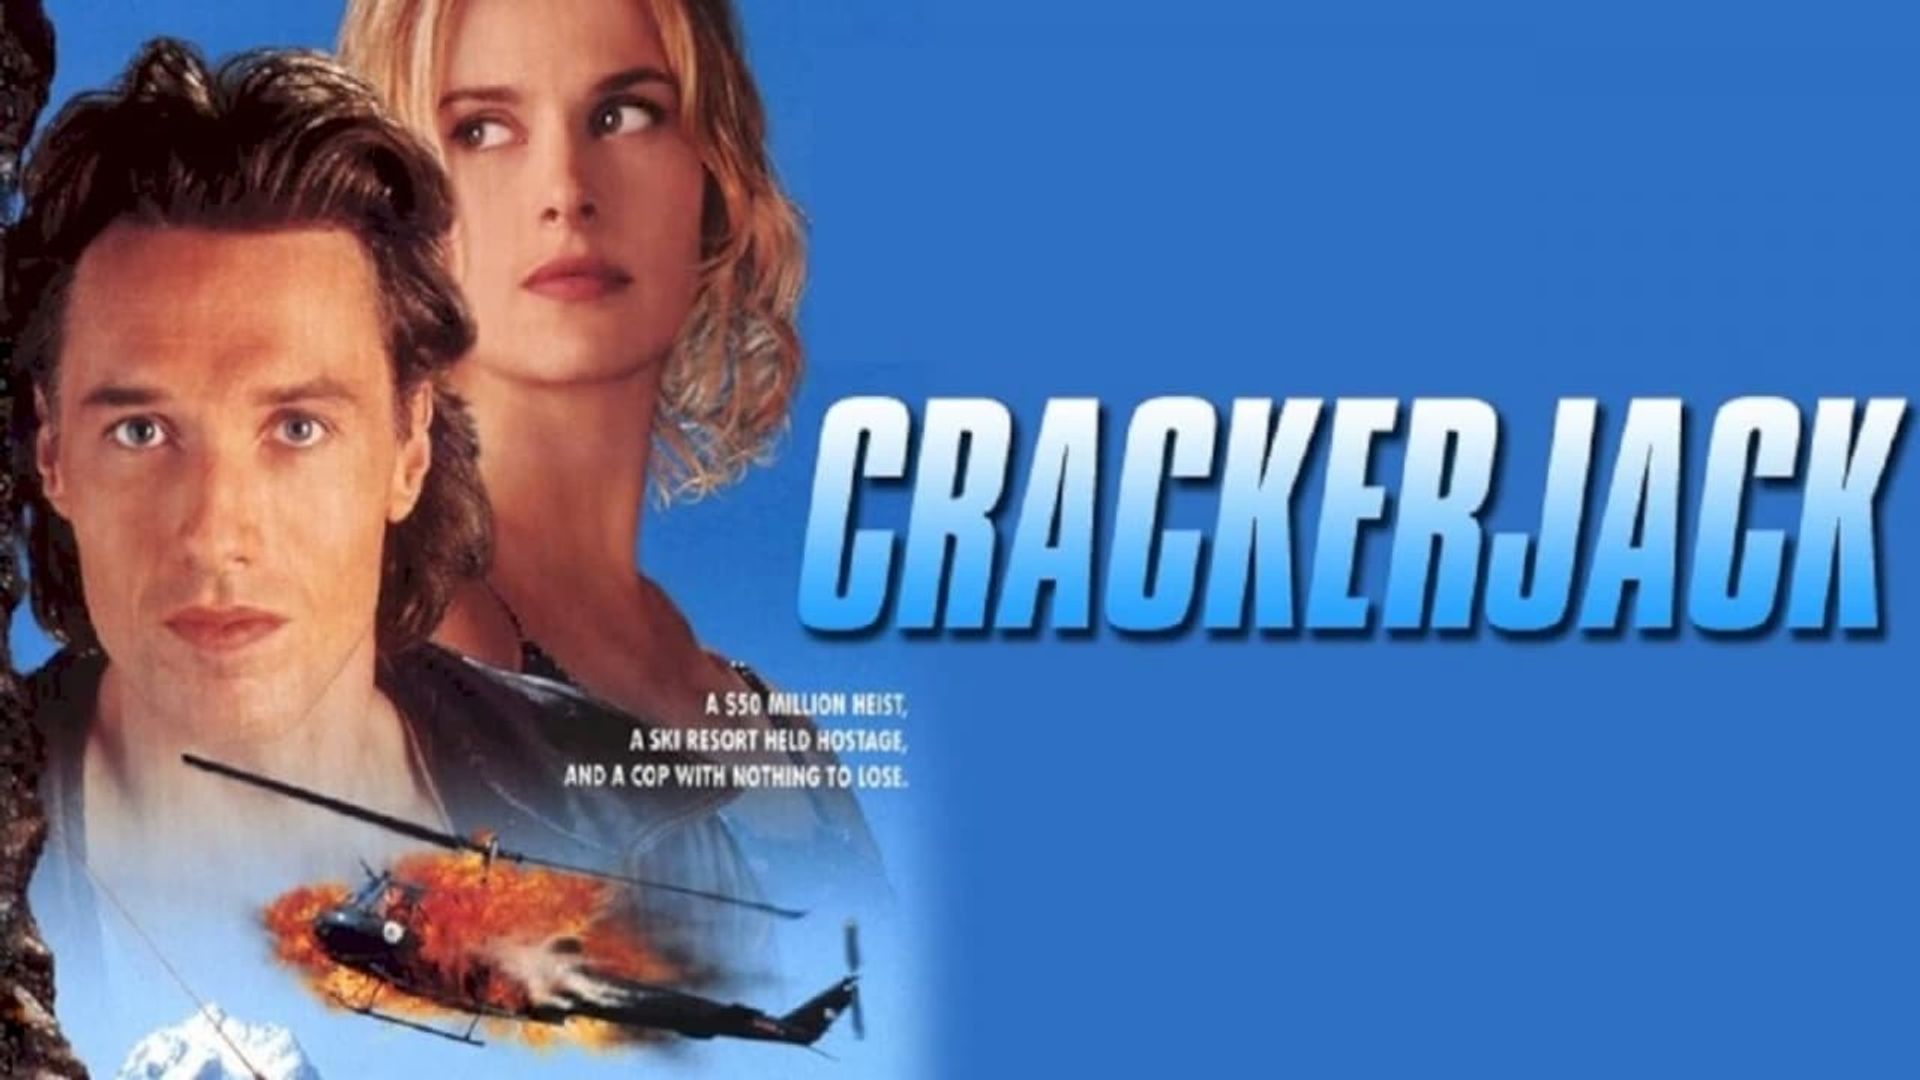 Crackerjack background